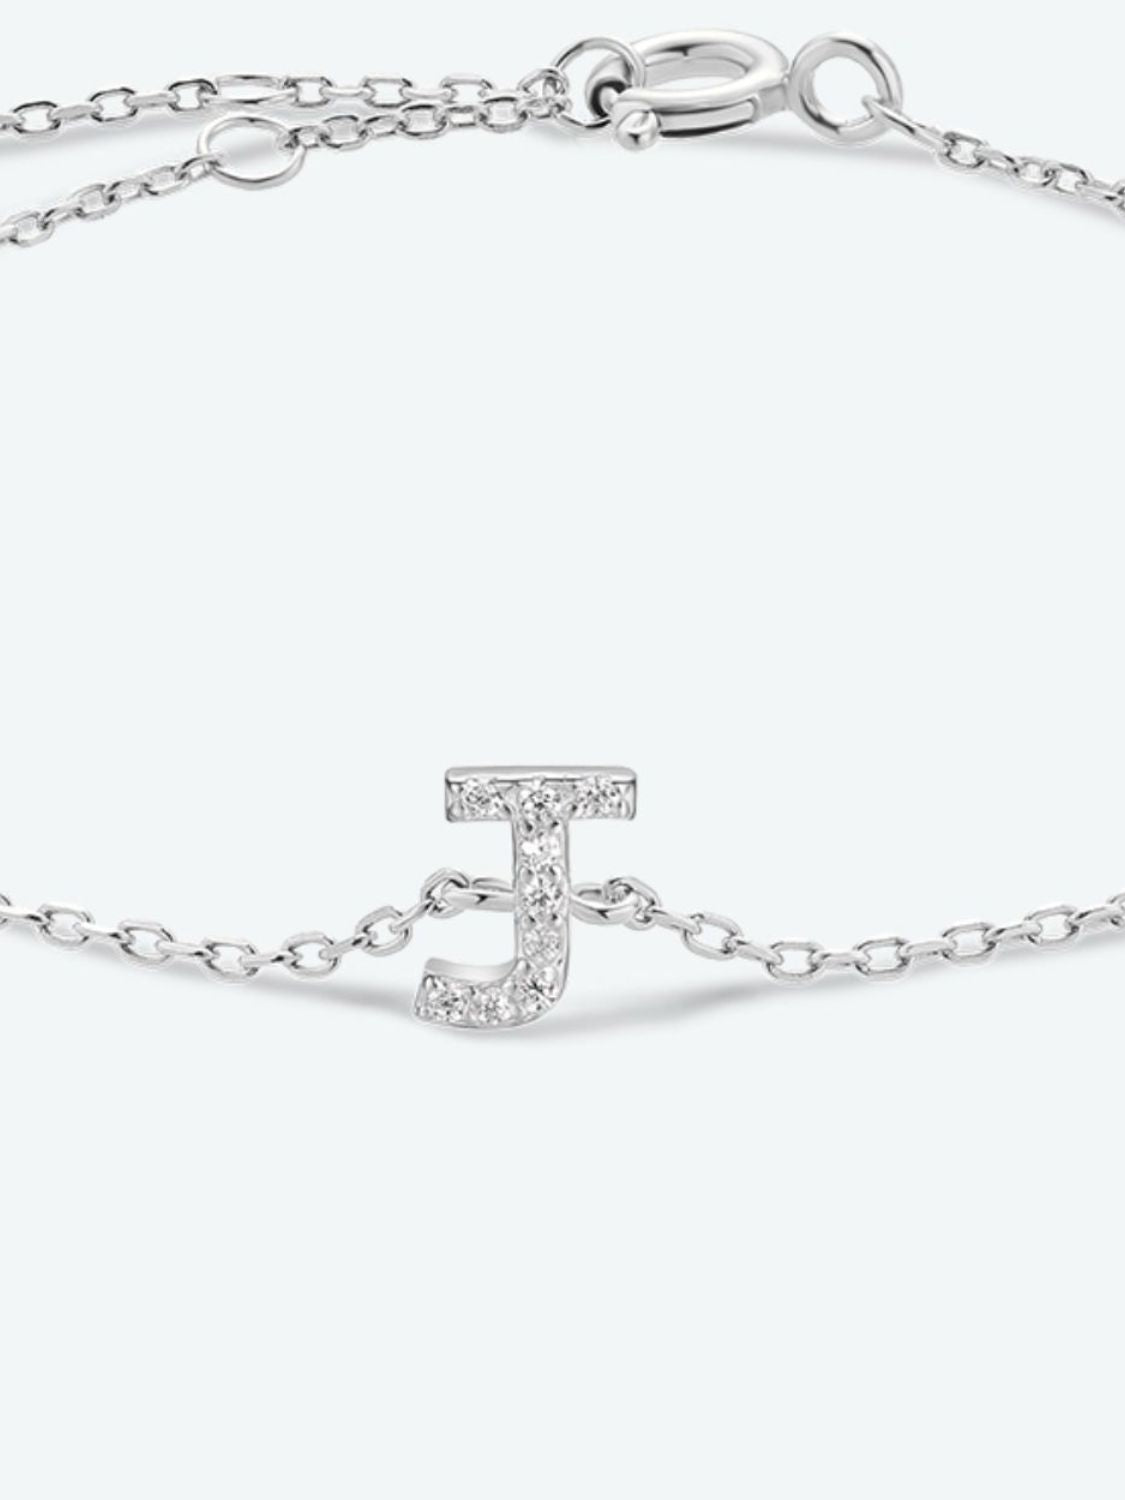 Zircon 925 Sterling Silver Bracelet - Women’s Jewelry - Bracelets - 23 - 2024